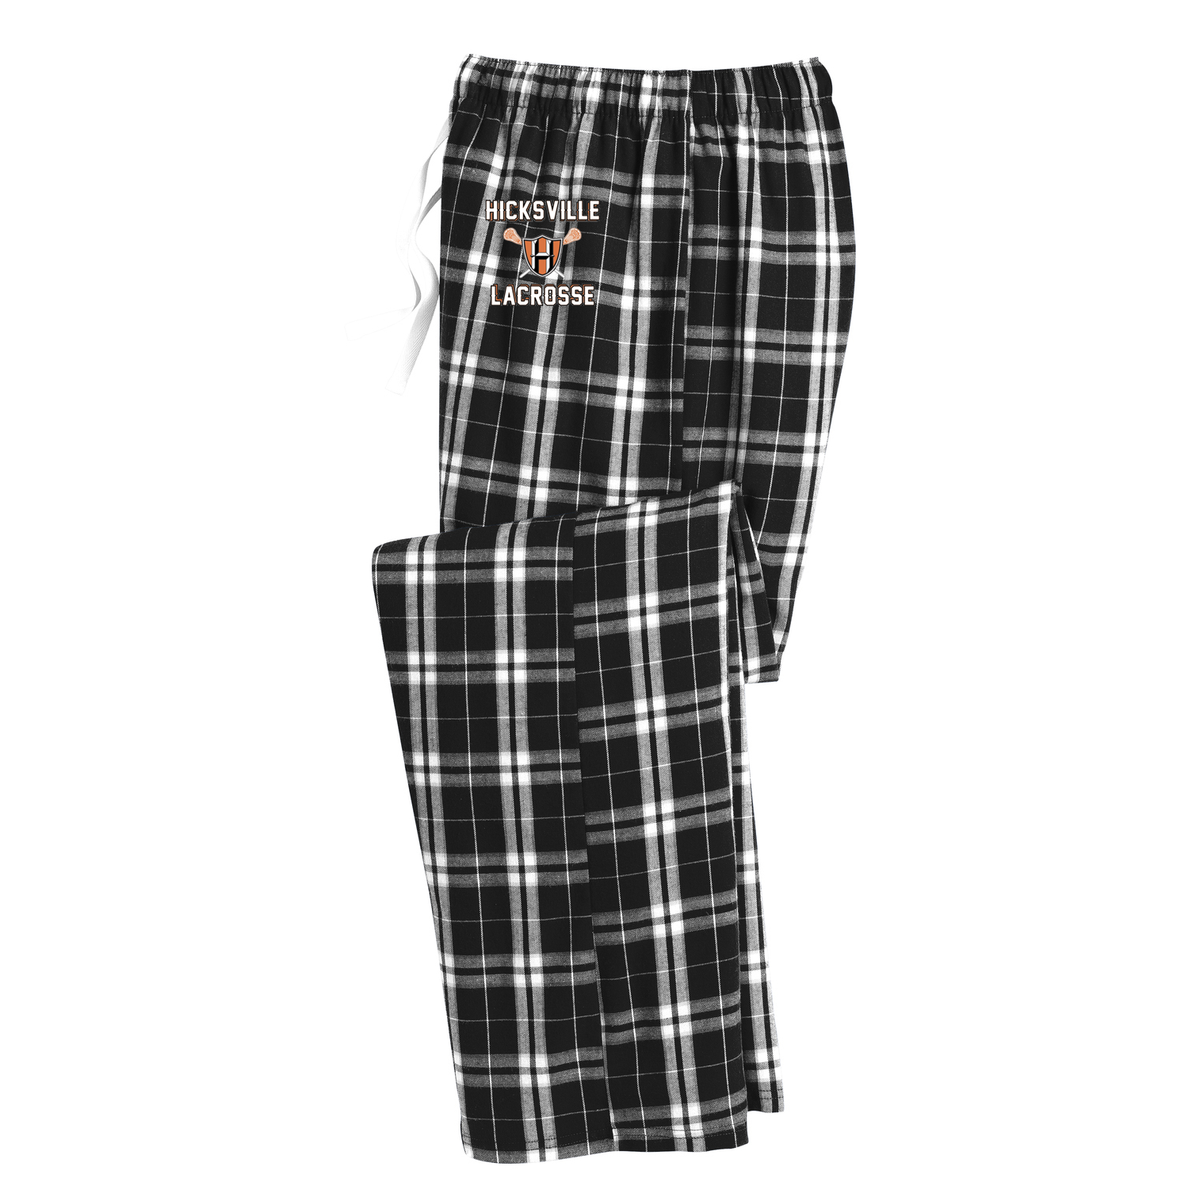 Hicksville Lacrosse Plaid Pajama Pants